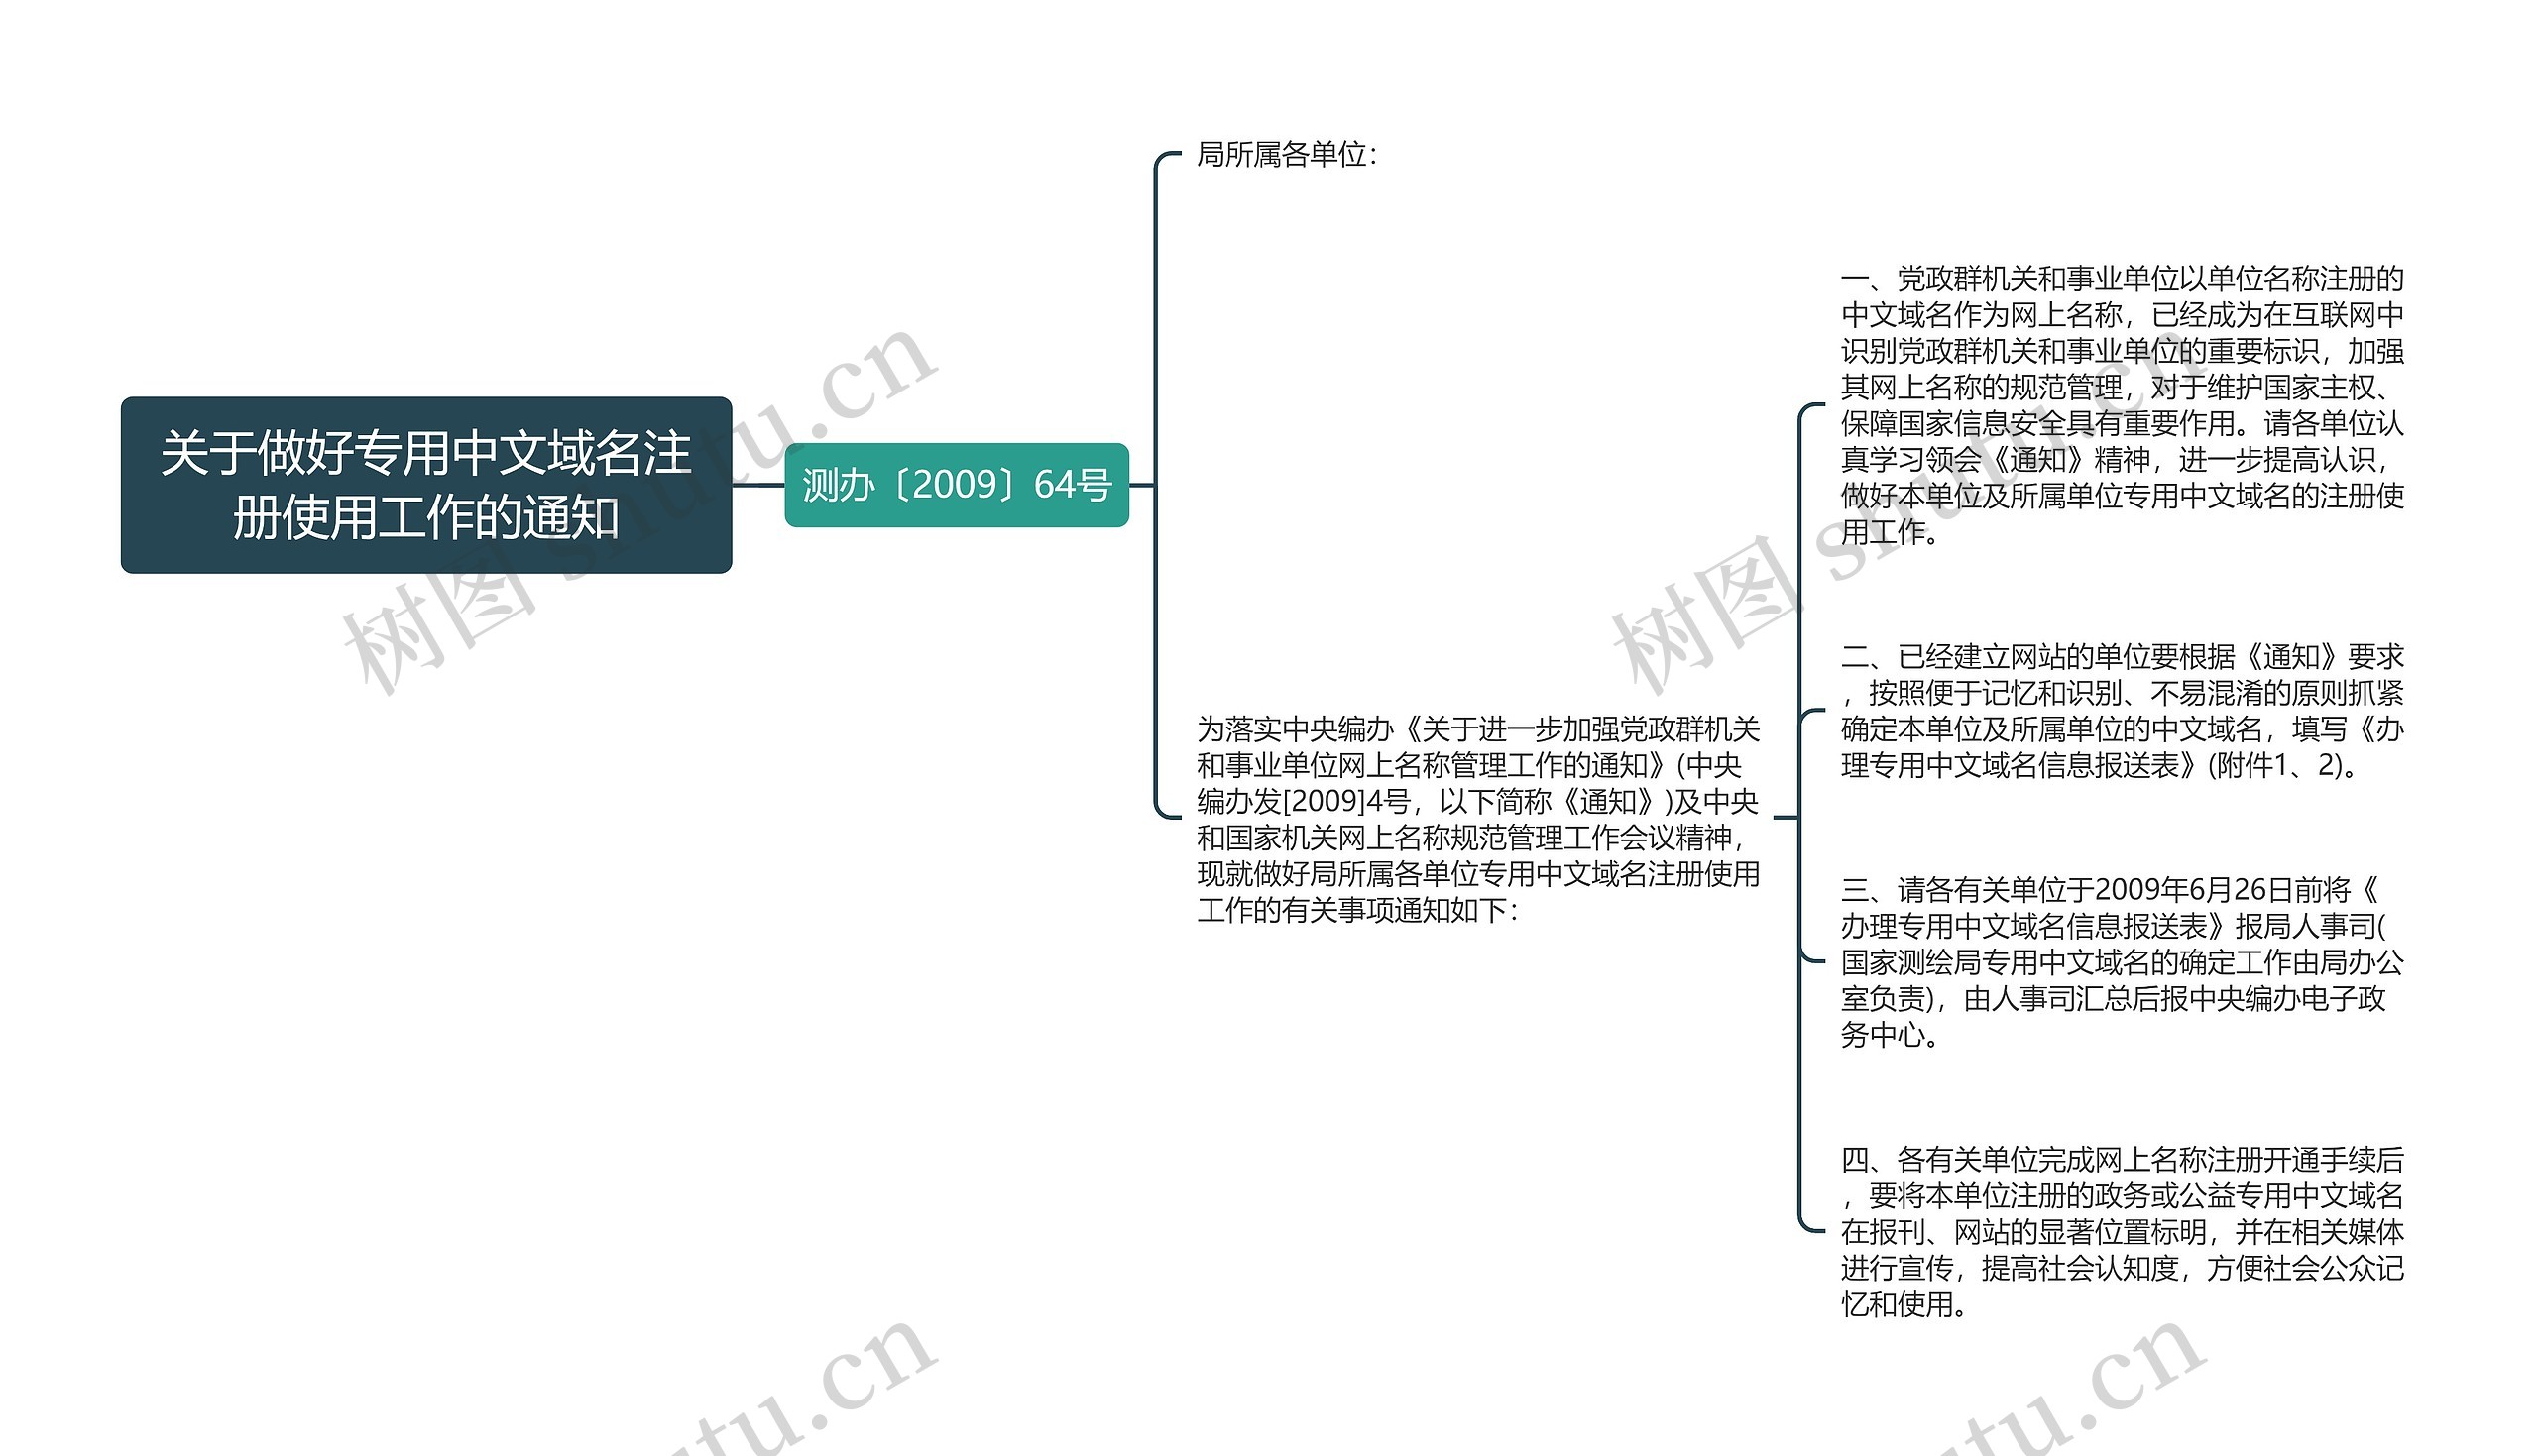 关于做好专用中文域名注册使用工作的通知